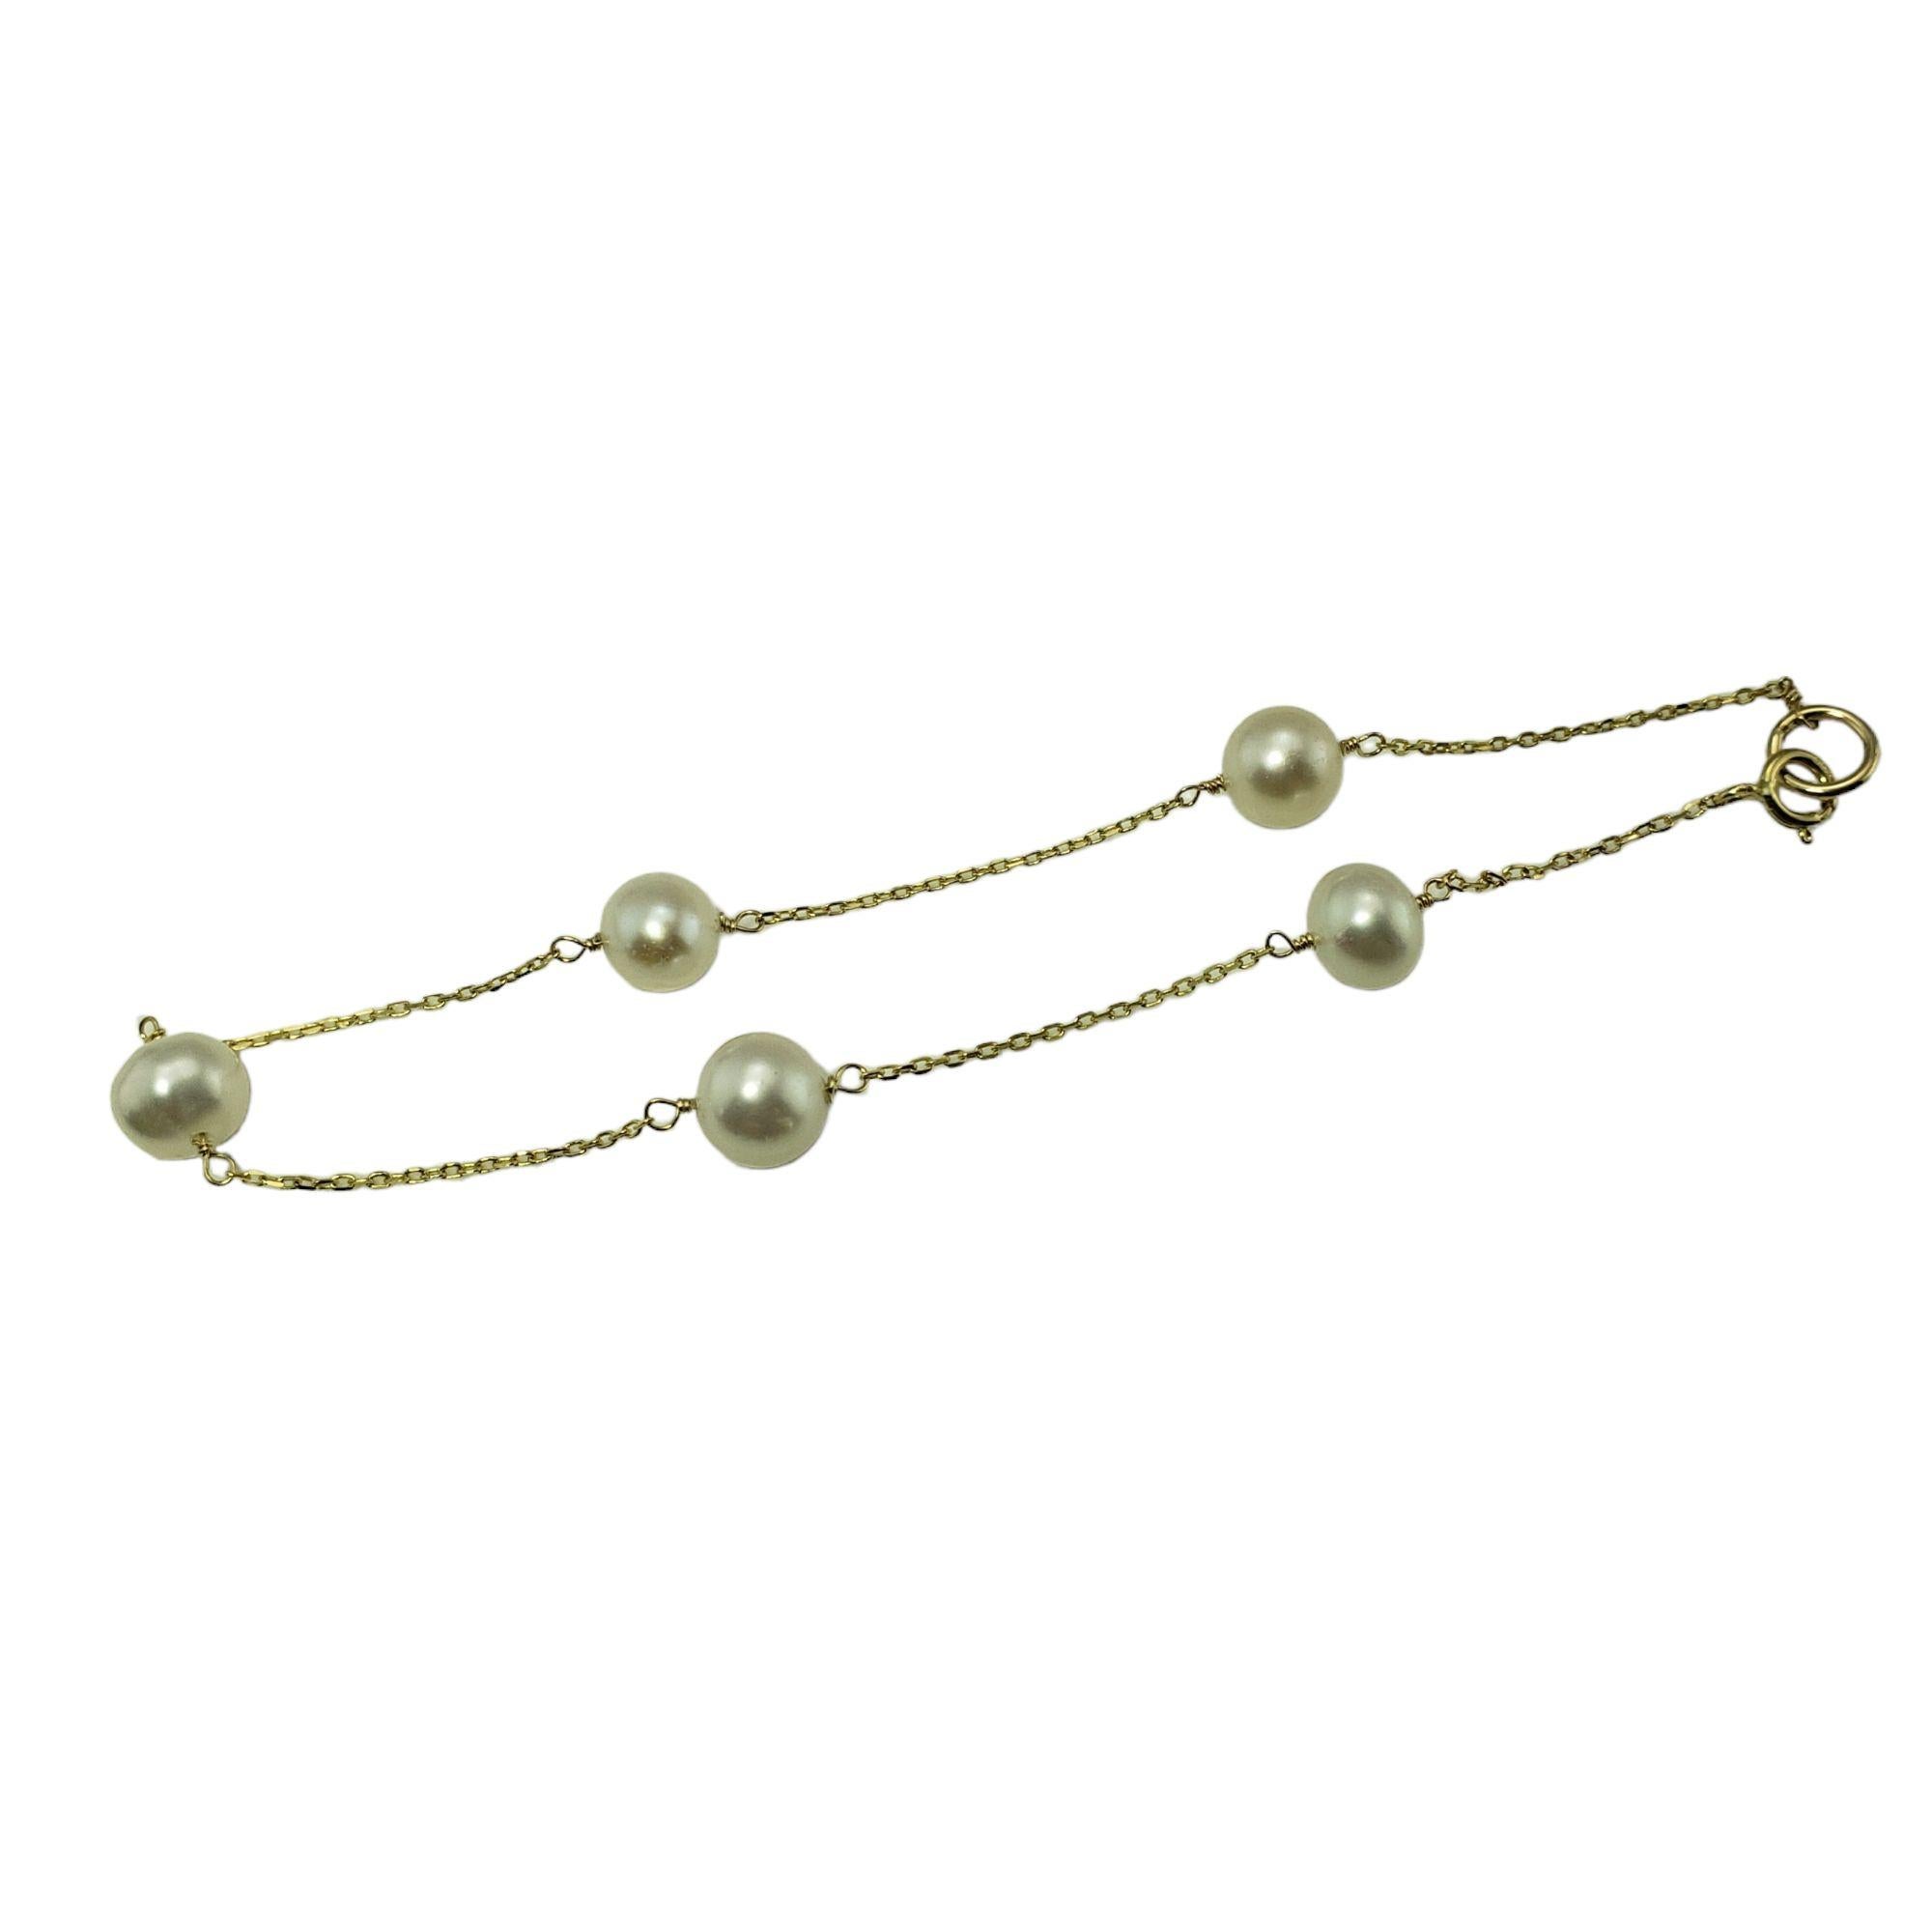 Vintage 14 Karat Gelbgold und Perlenarmband-

Dieses hübsche Armband besteht aus sieben 6 mm großen weißen Perlen, die an einer klassischen Kabelkette befestigt sind.

Größe: 7 Zoll

Gewicht:  1.3 dwt. /  2,1 gr.

Gestempelt: 585

Sehr guter